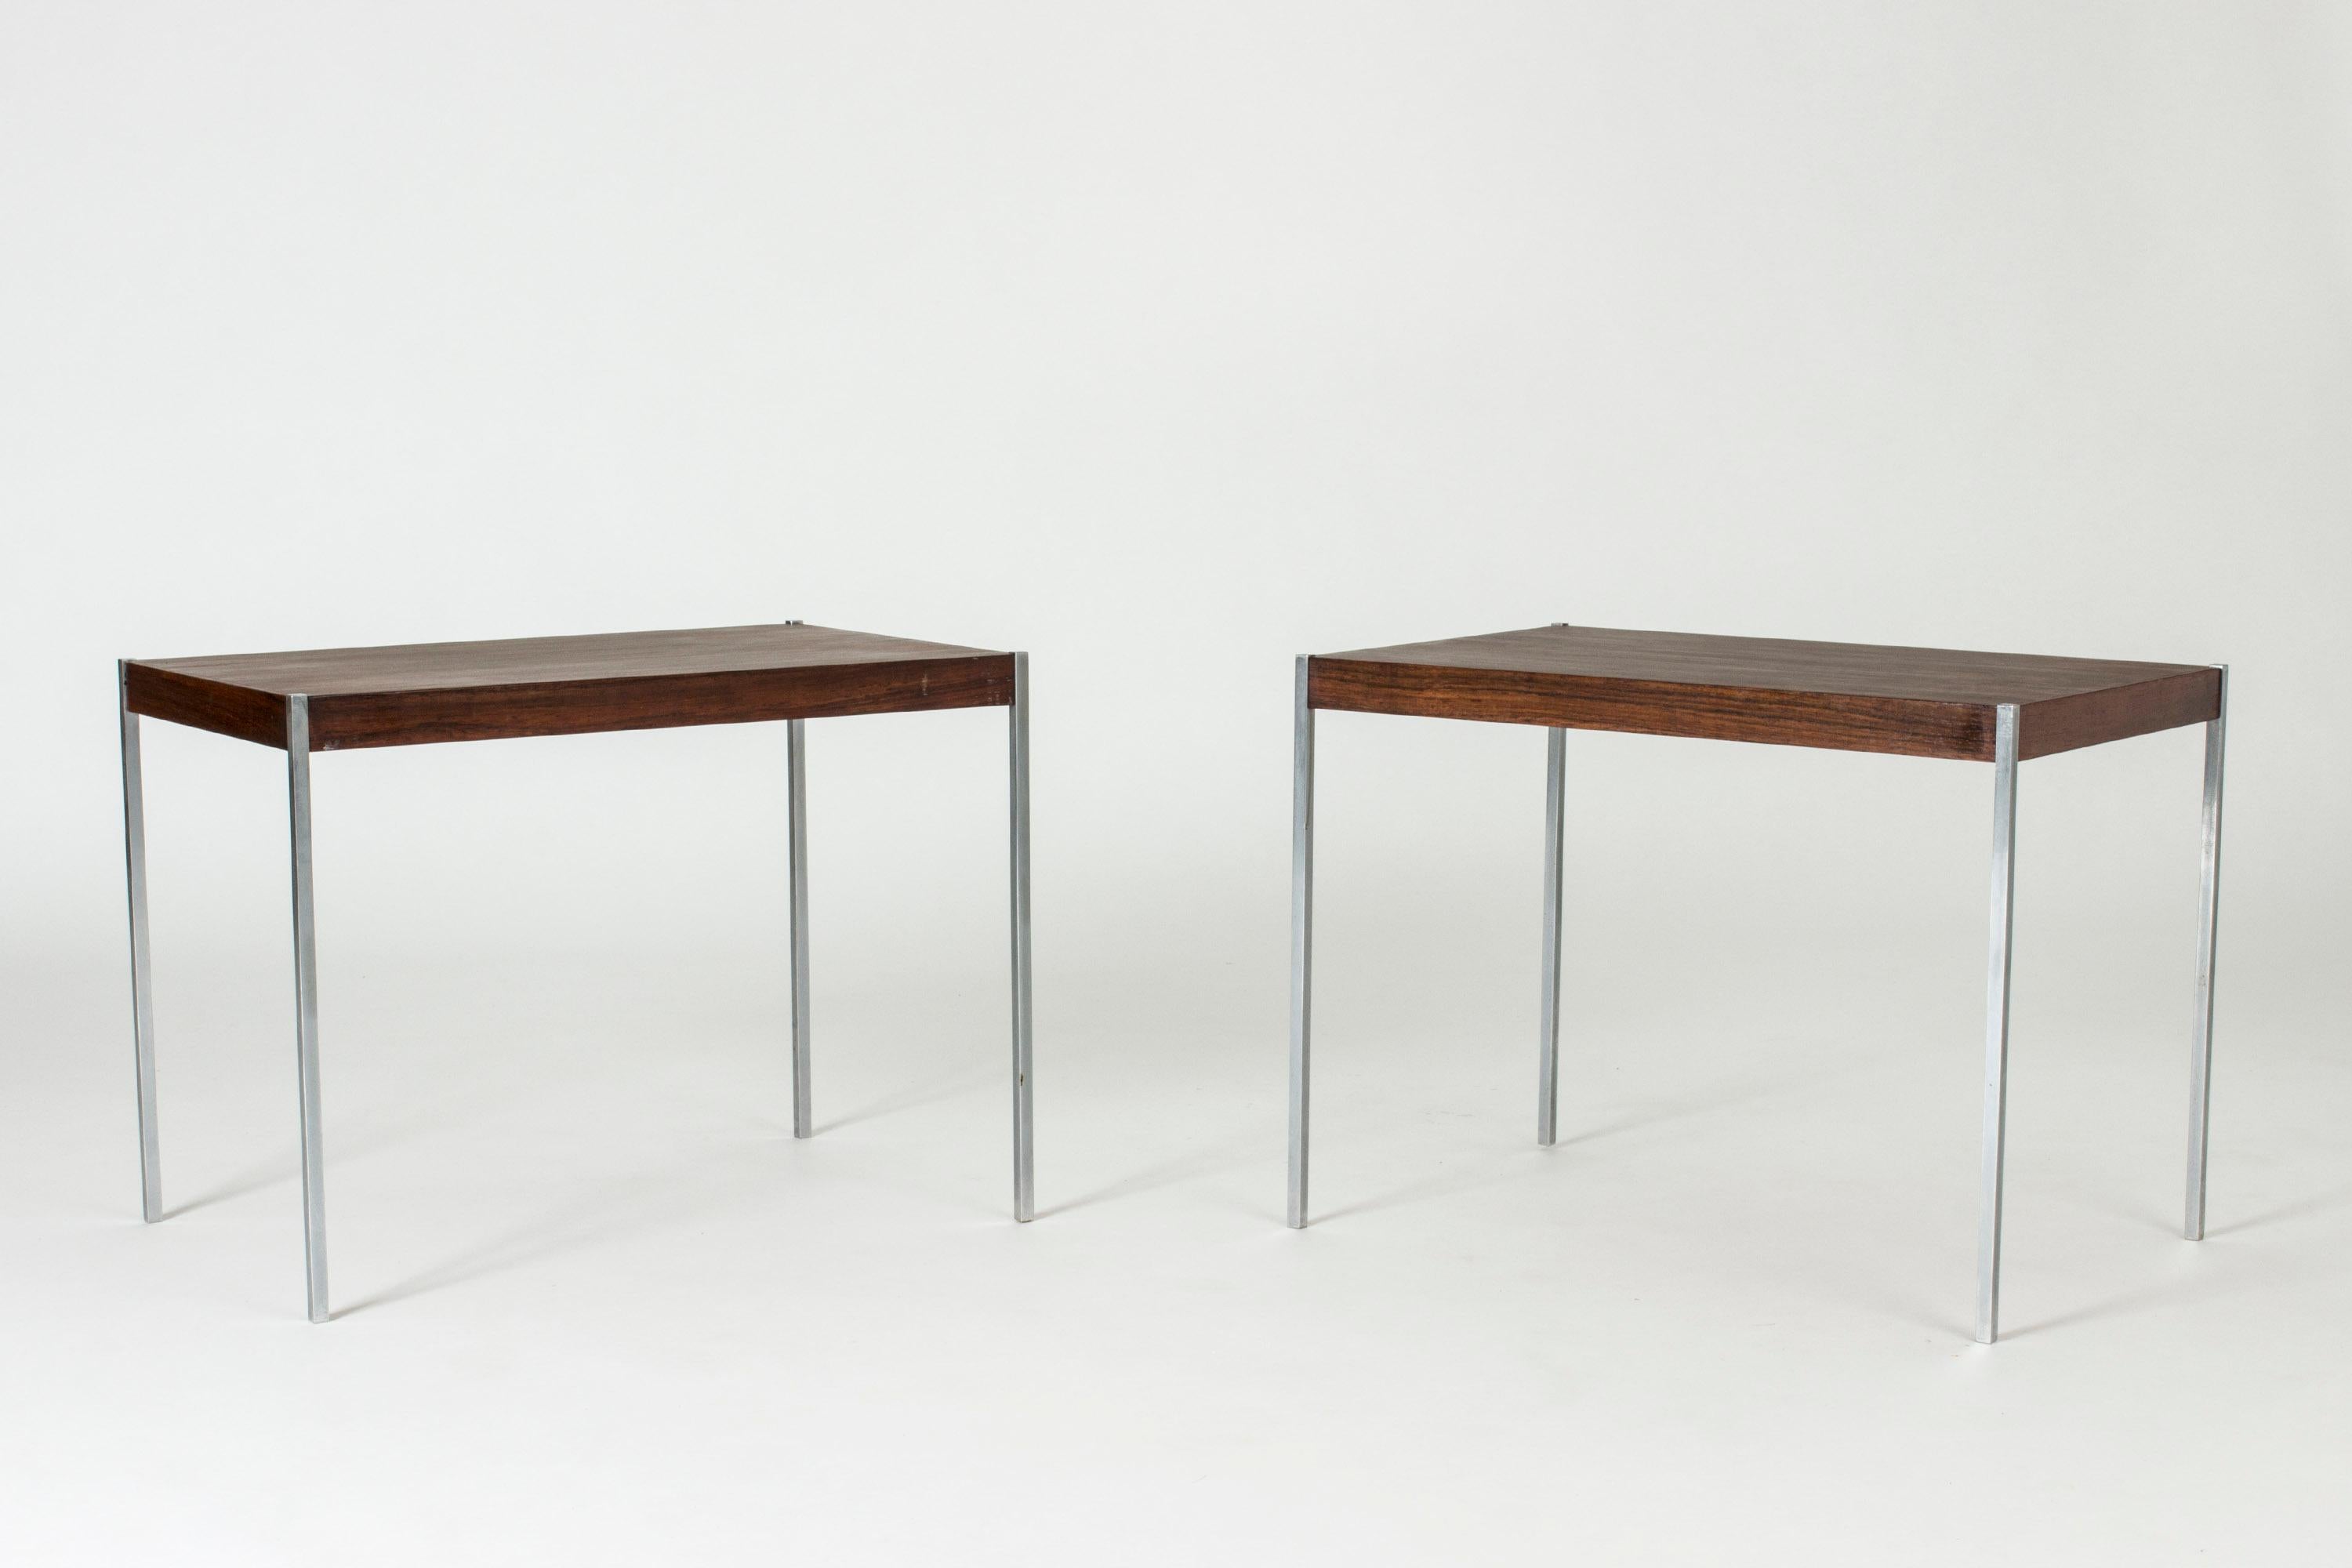 Ein Paar cooler Beistelltische von Uno und Östen Kristiansson. Die schlanken, quadratischen Stahlbeine fügen sich nahtlos in die Palisanderholz-Tischplatten ein.